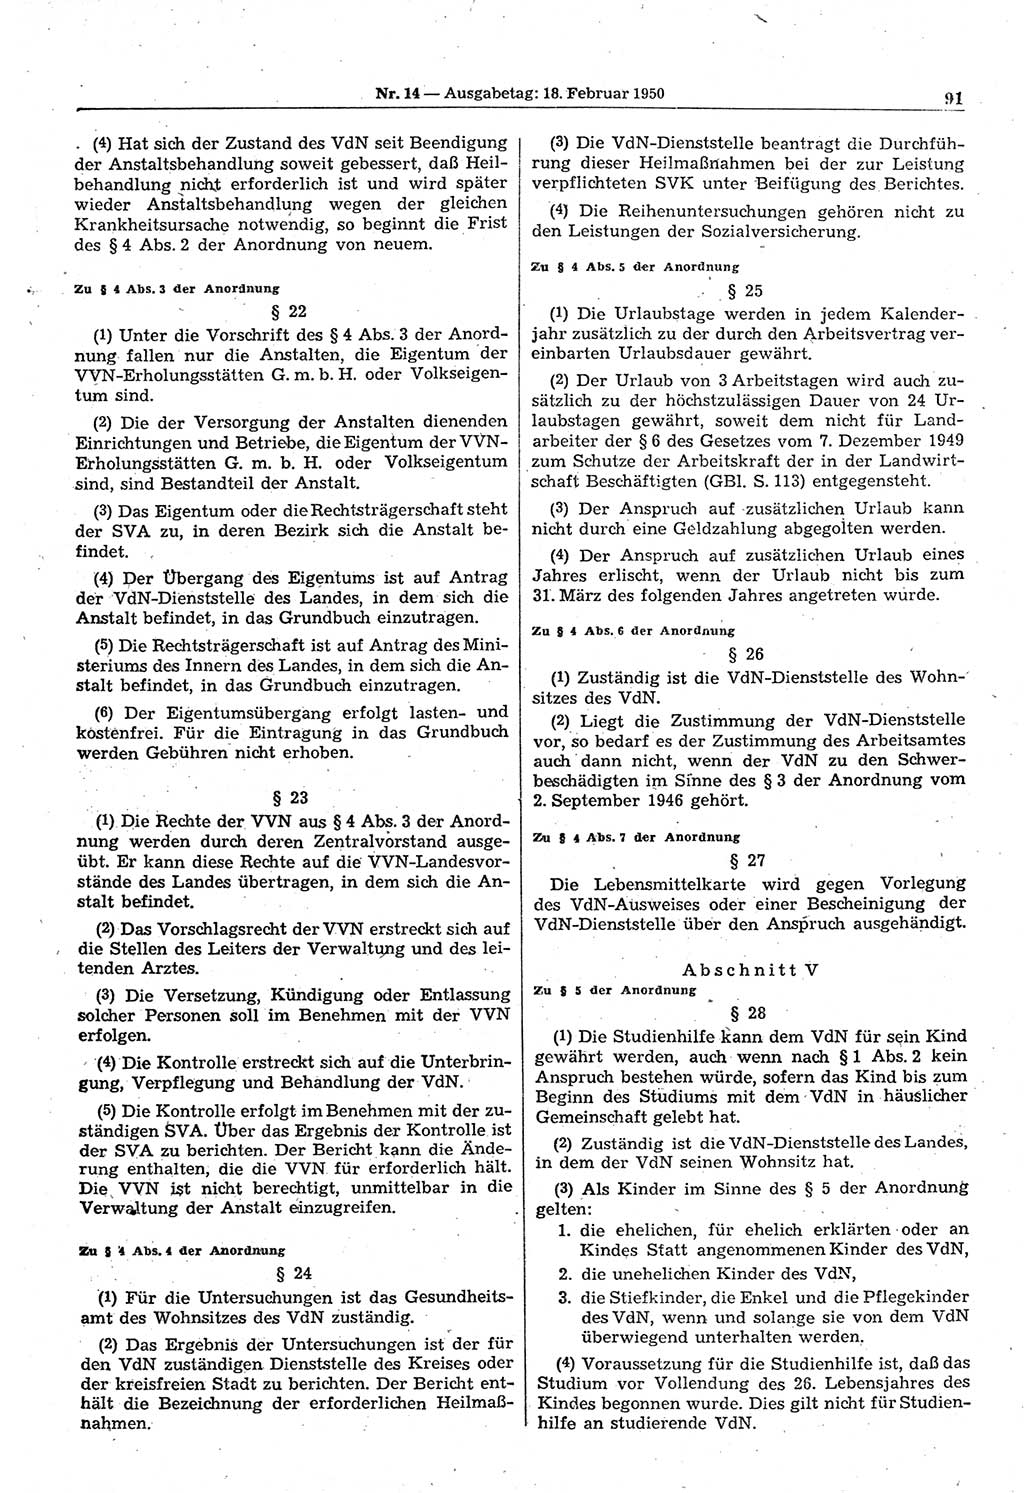 Gesetzblatt (GBl.) der Deutschen Demokratischen Republik (DDR) 1950, Seite 91 (GBl. DDR 1950, S. 91)